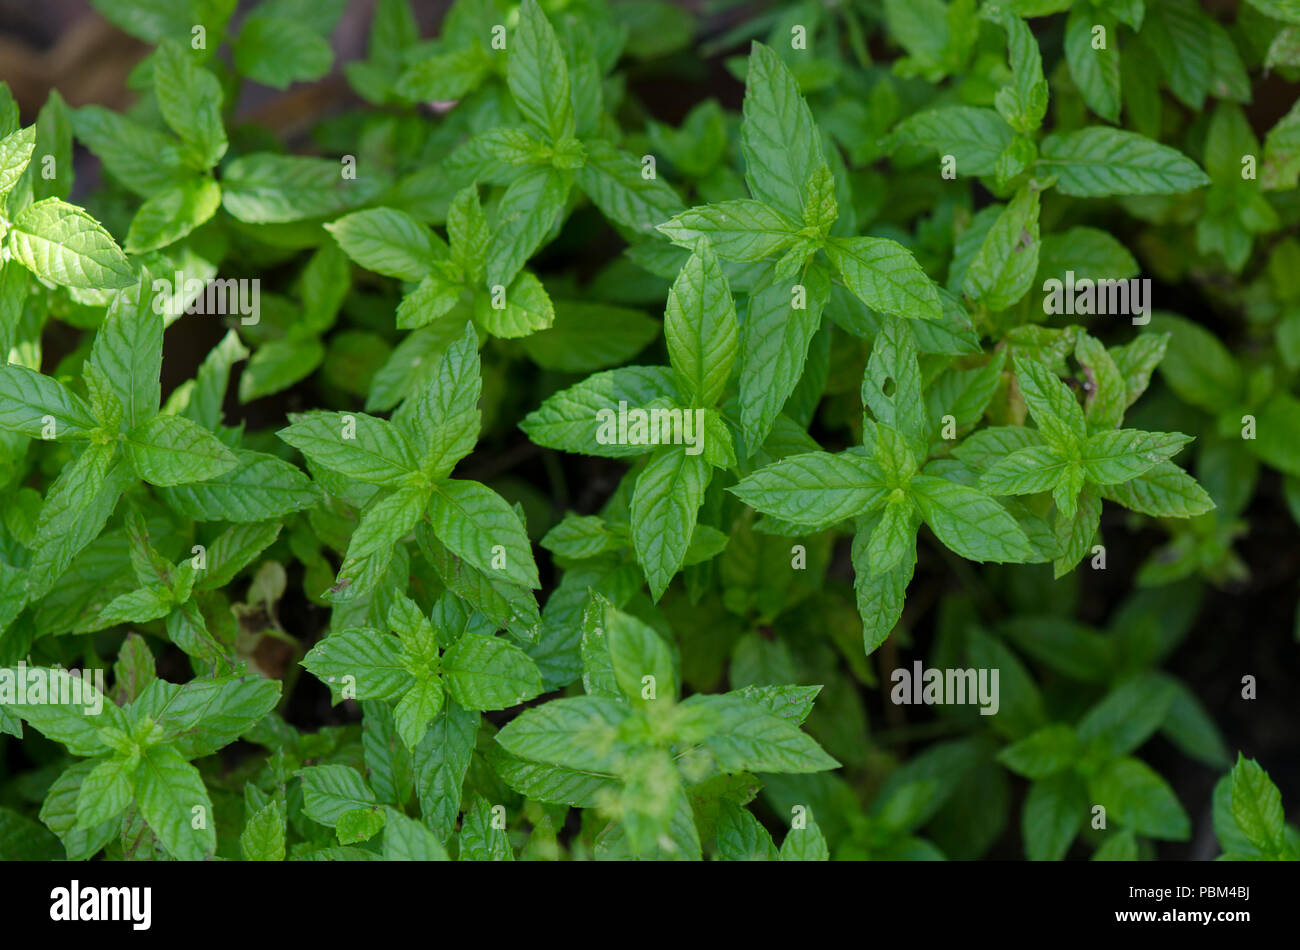 Moroccan mint growing in herb garden. Spain. Stock Photo